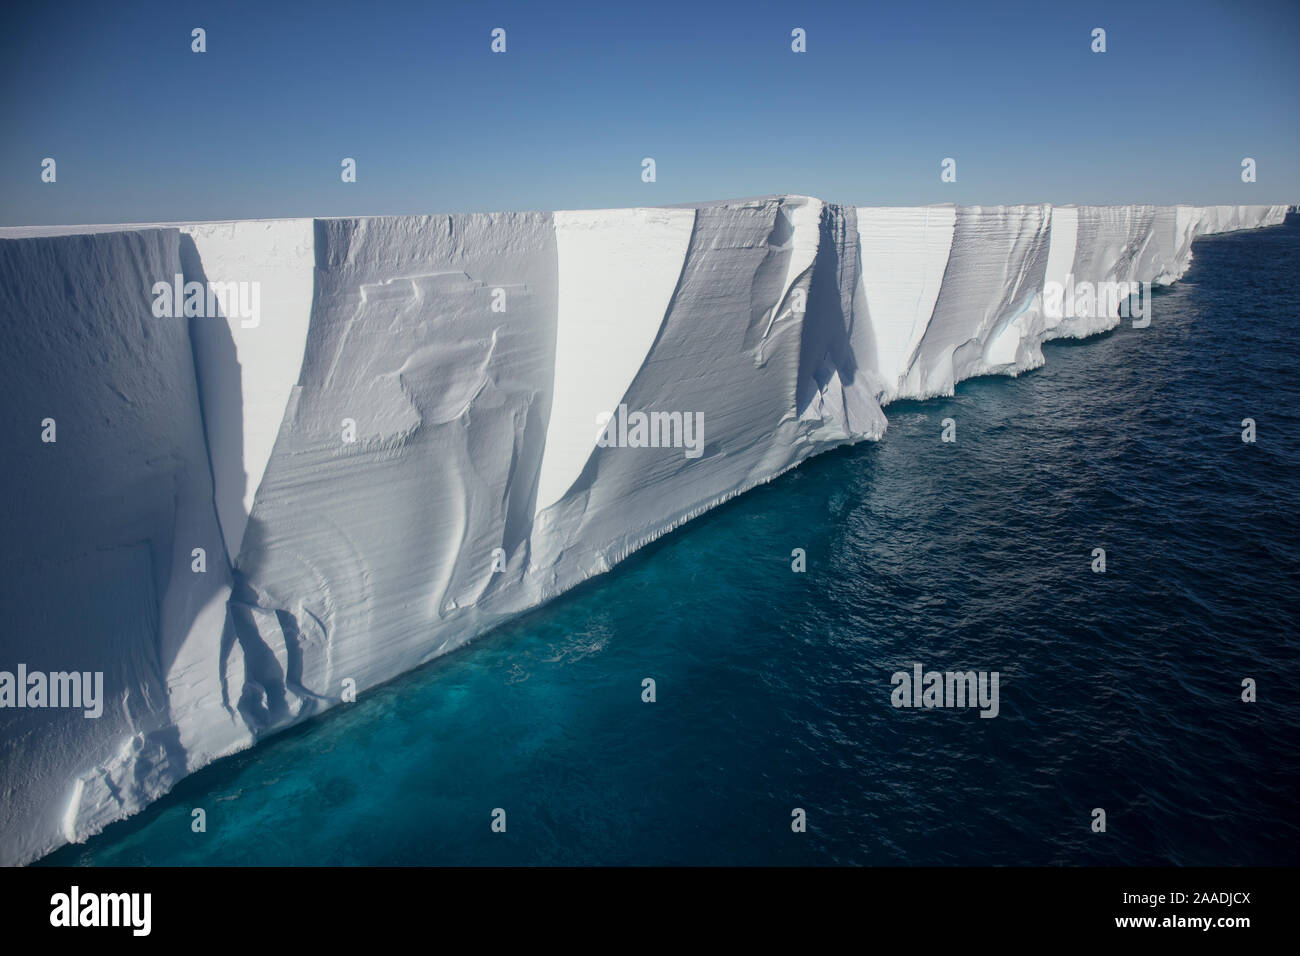 Ross Ice Shelf das größte Eisschelf der Antarktis, in der Nähe von Kap Crozier, Ross Insel, Ross Sea, Antarctica Luftaufnahme von Hubschrauber 02.02.2017 Reise auf der MV Ortelius, 13 Jan? 14 Feb, 2017 von Ushuaia, Argentinien zu bluffen, Neuseeland. Für die Süßwasser-Projekt fotografiert. Stockfoto